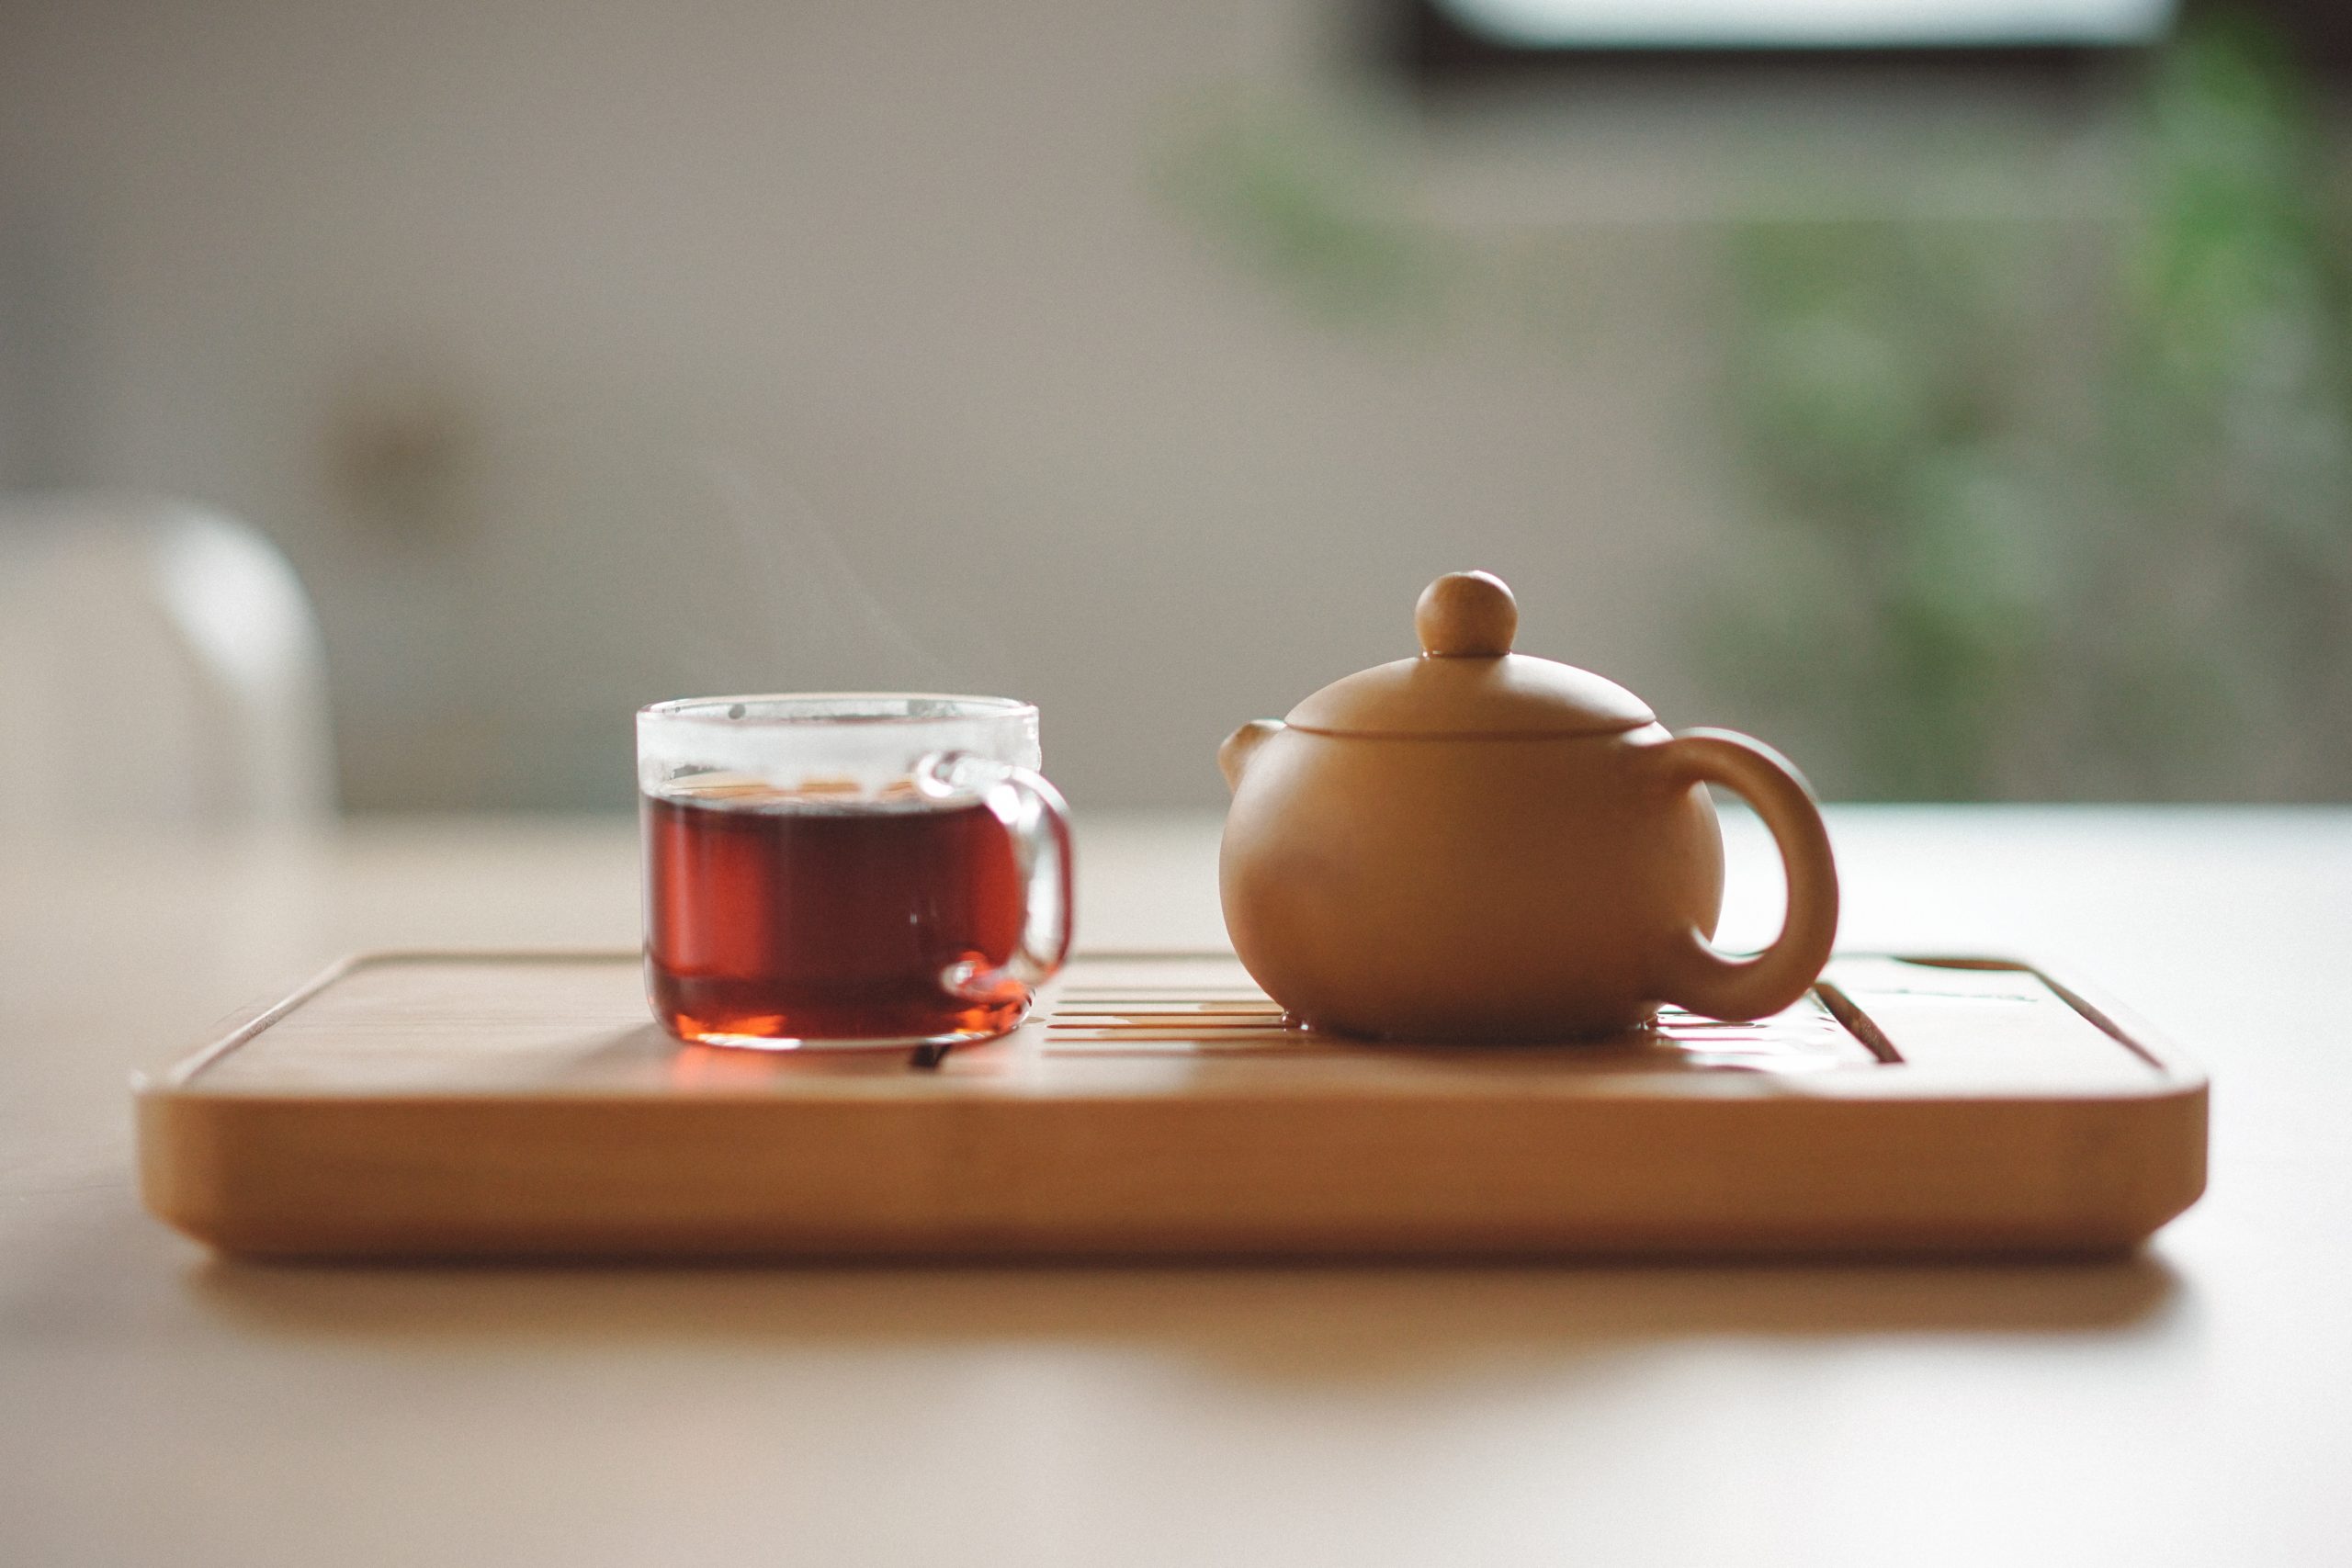 Clear mug with tea next to a tea pot.